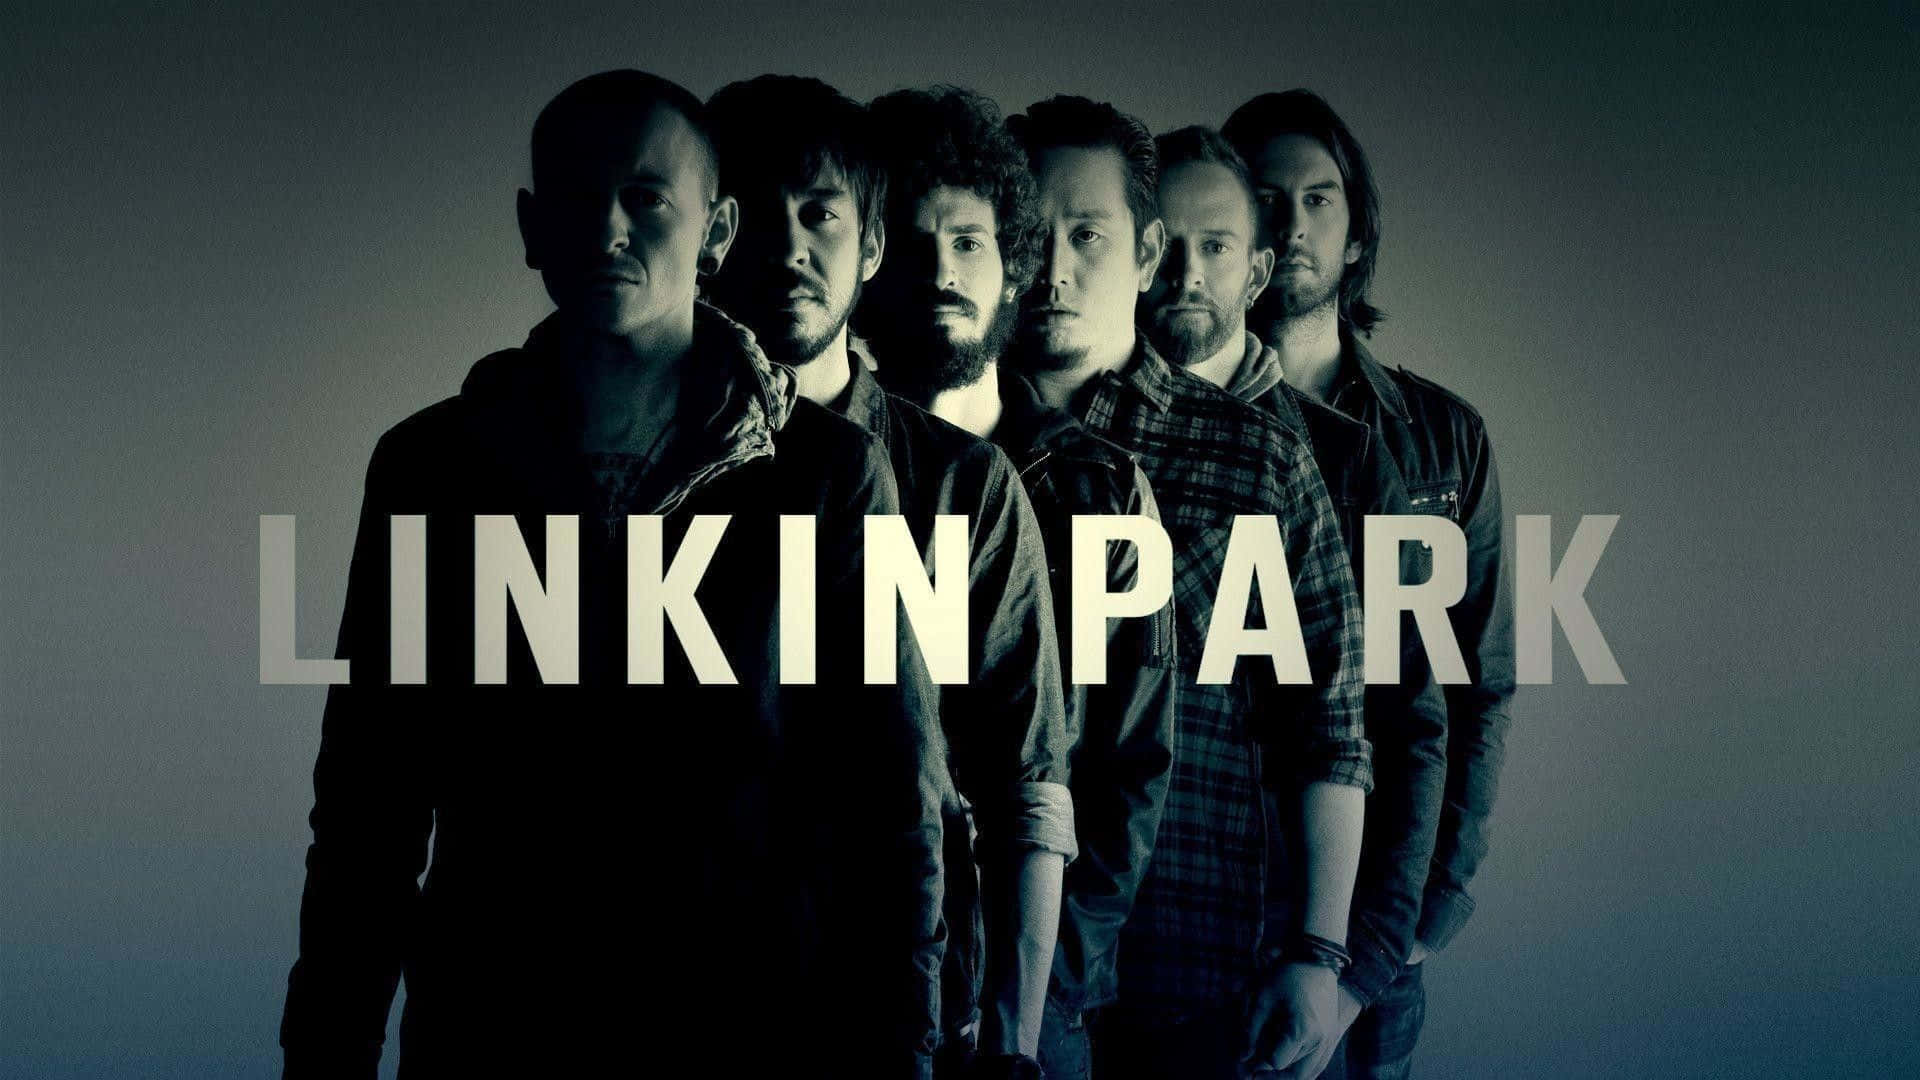 92 Linkin Park Wallpapers ideas  linkin park wallpaper linkin park park